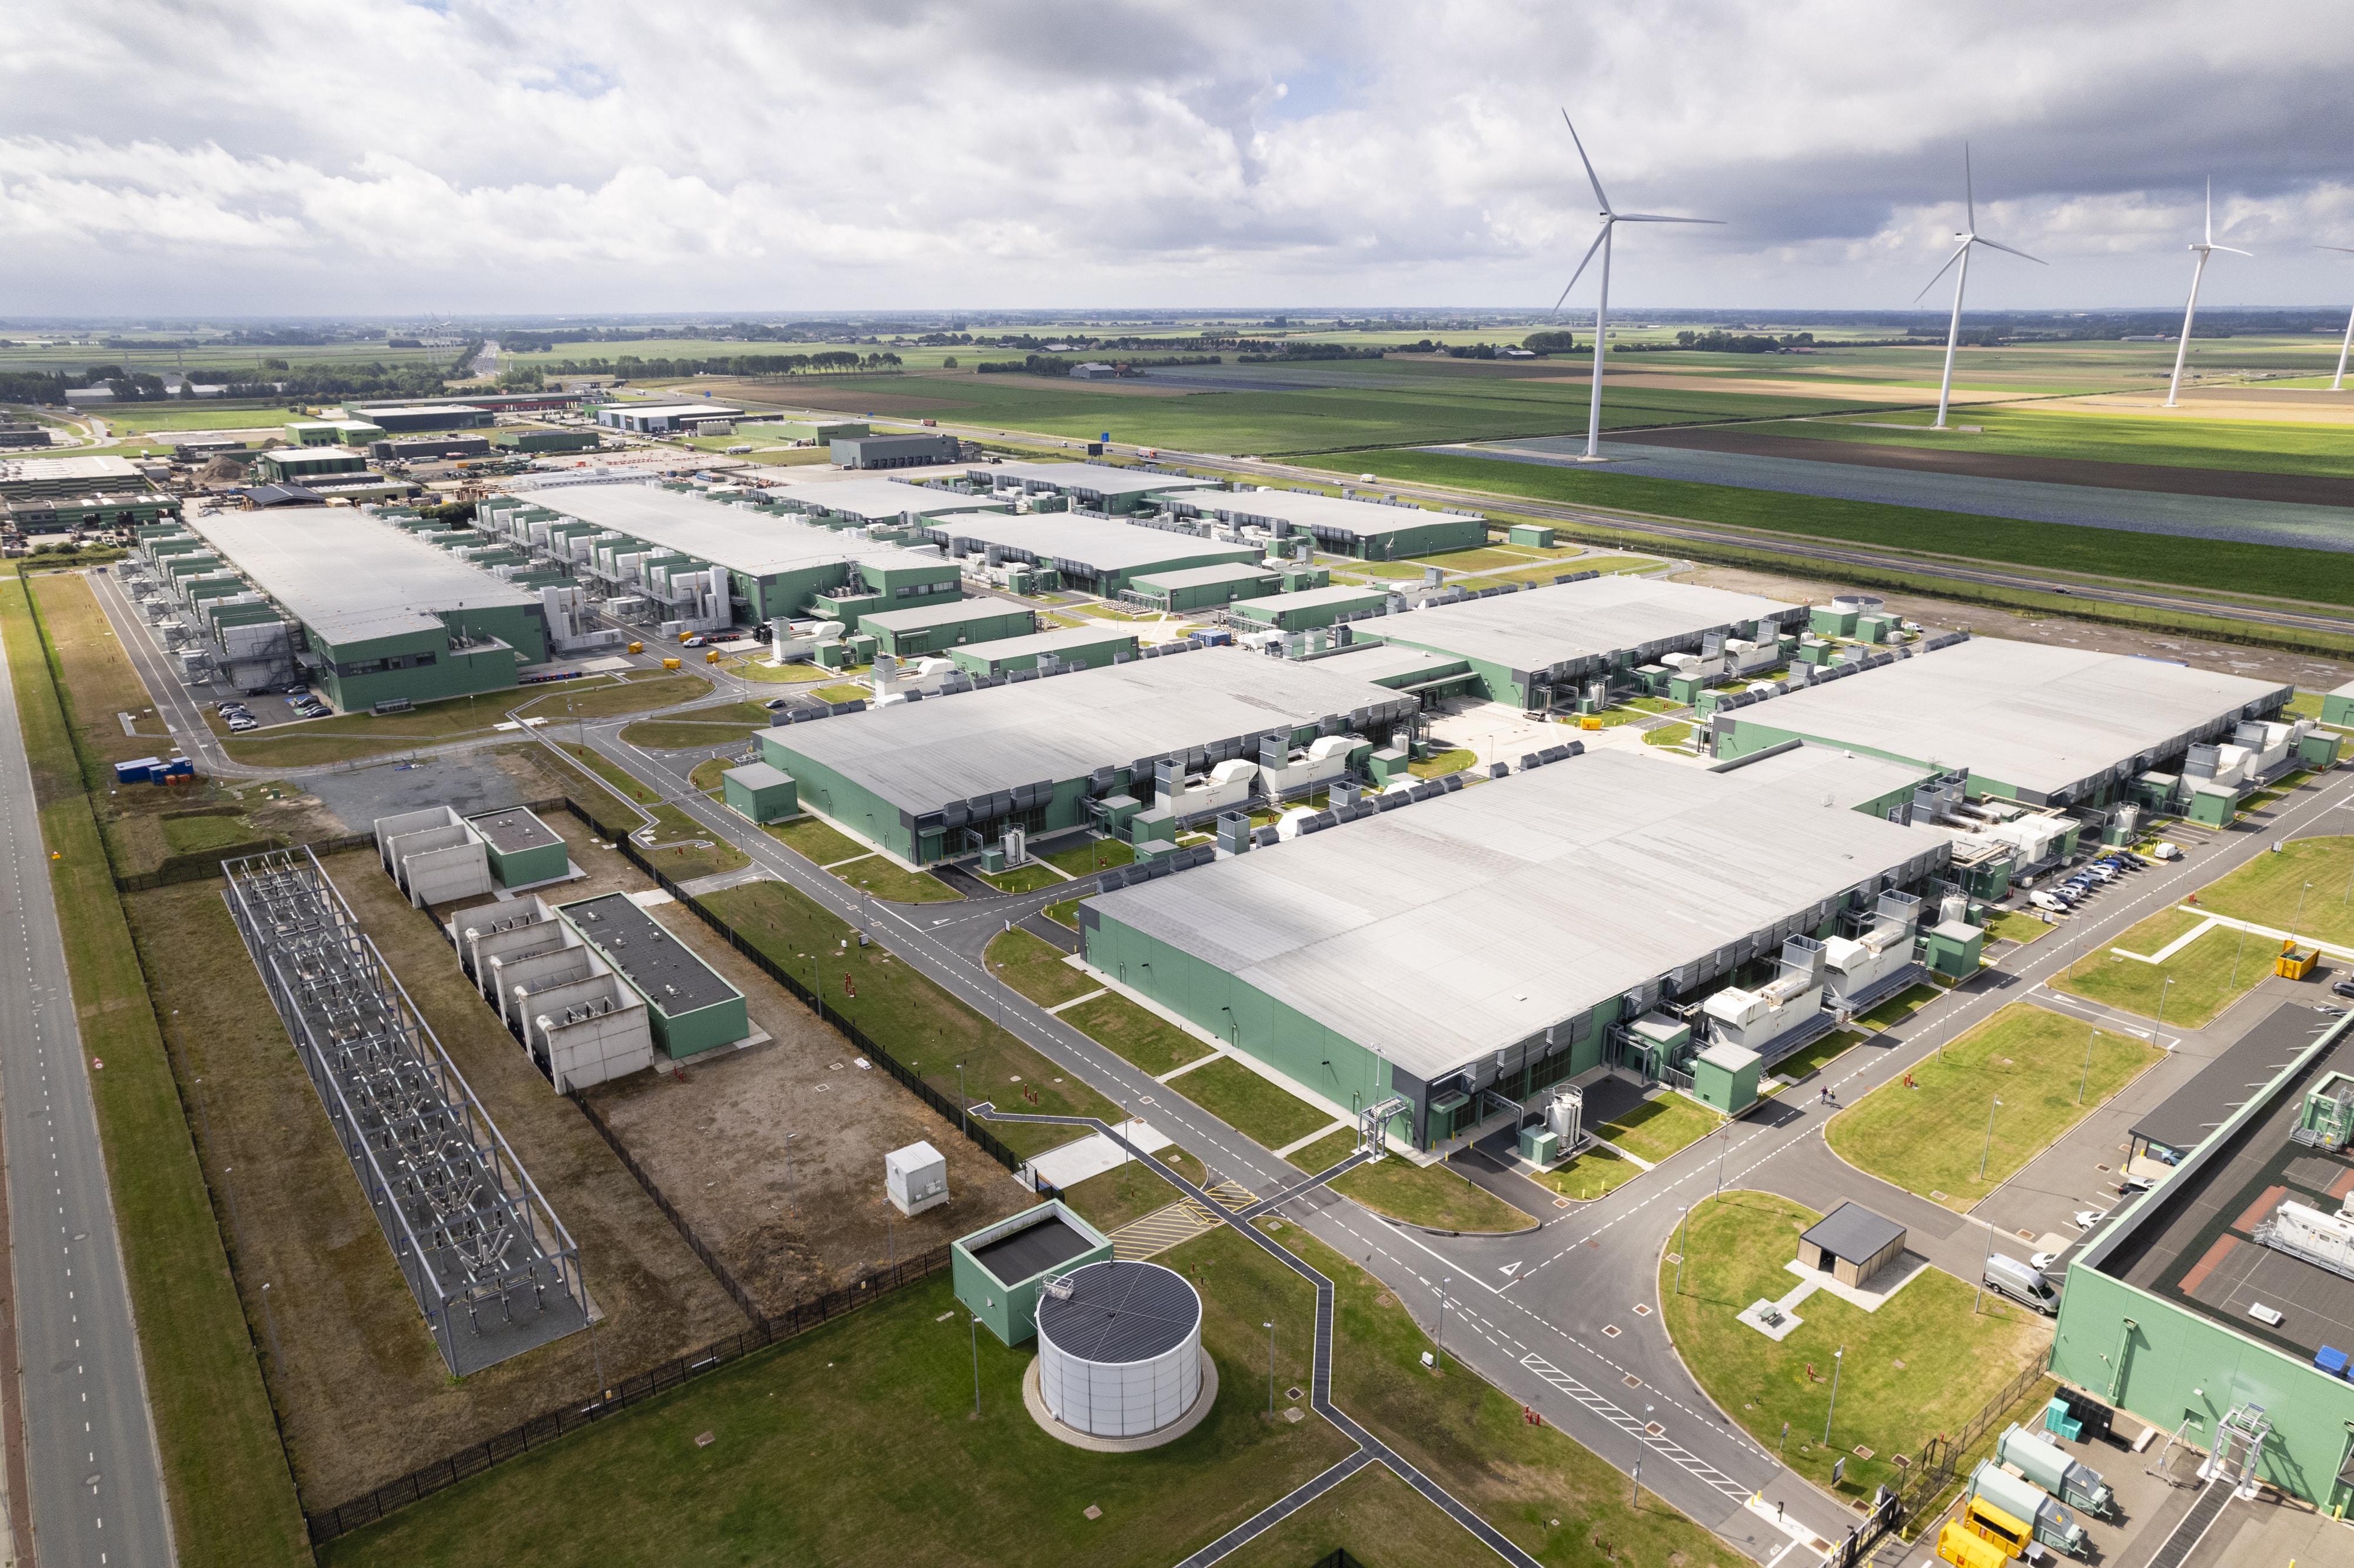 Vista aérea de la descarbonización industrial: fábricas e infraestructuras que trabajan para reducir las emisiones de carbono.